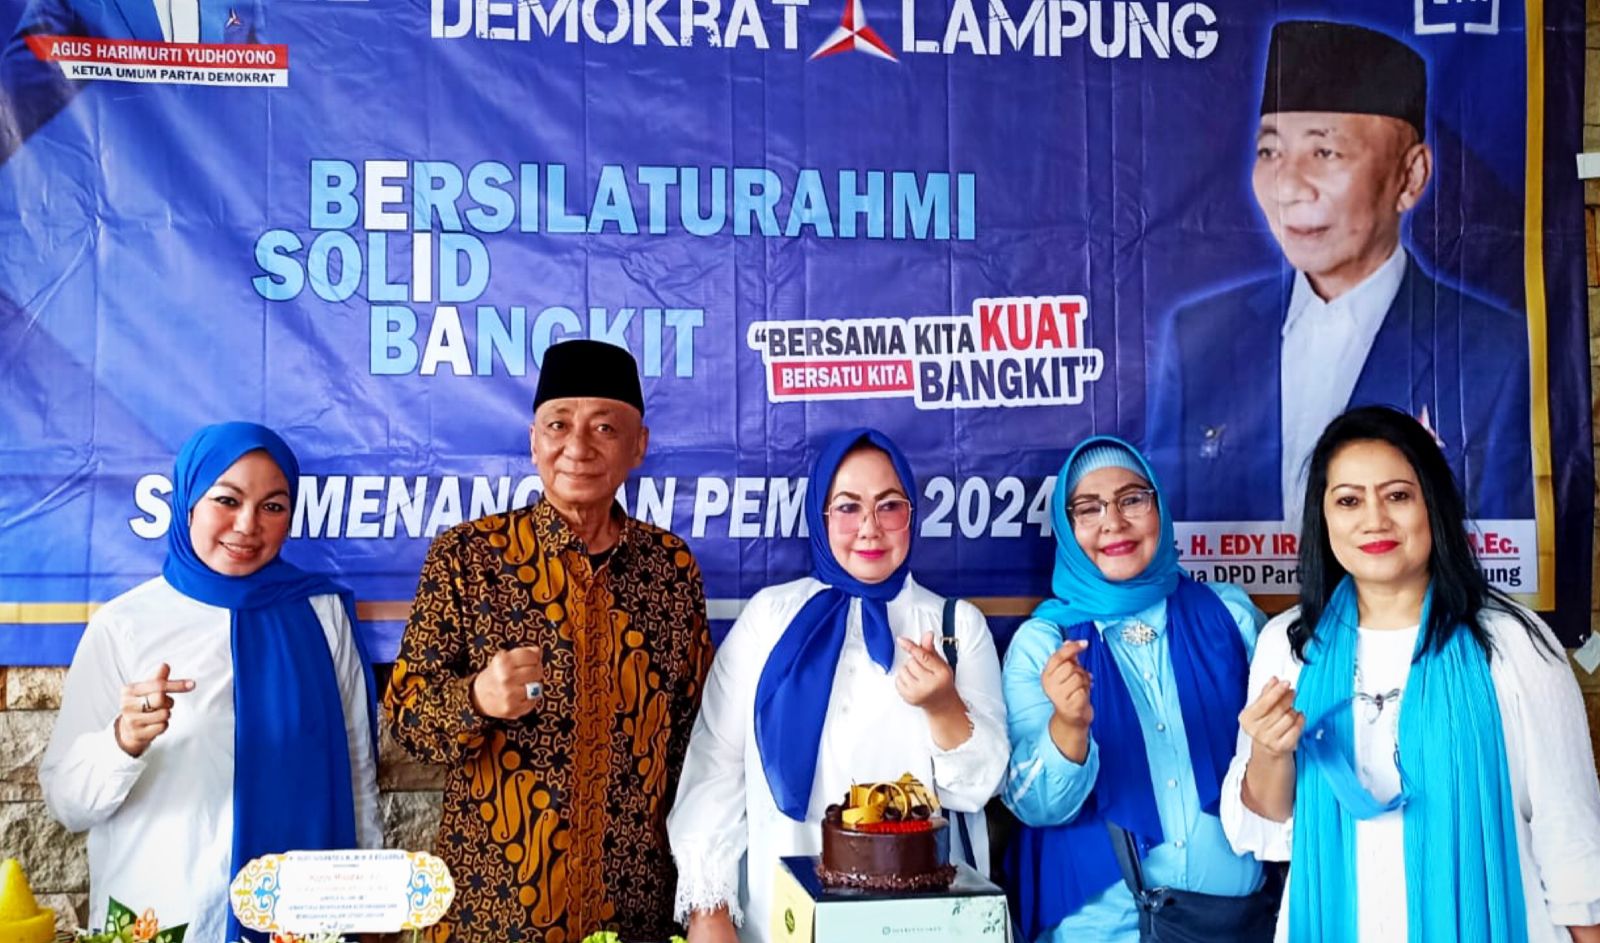 Verifikasi Parpol Rampung, Demokrat Lampung Siap Kolaborasi 